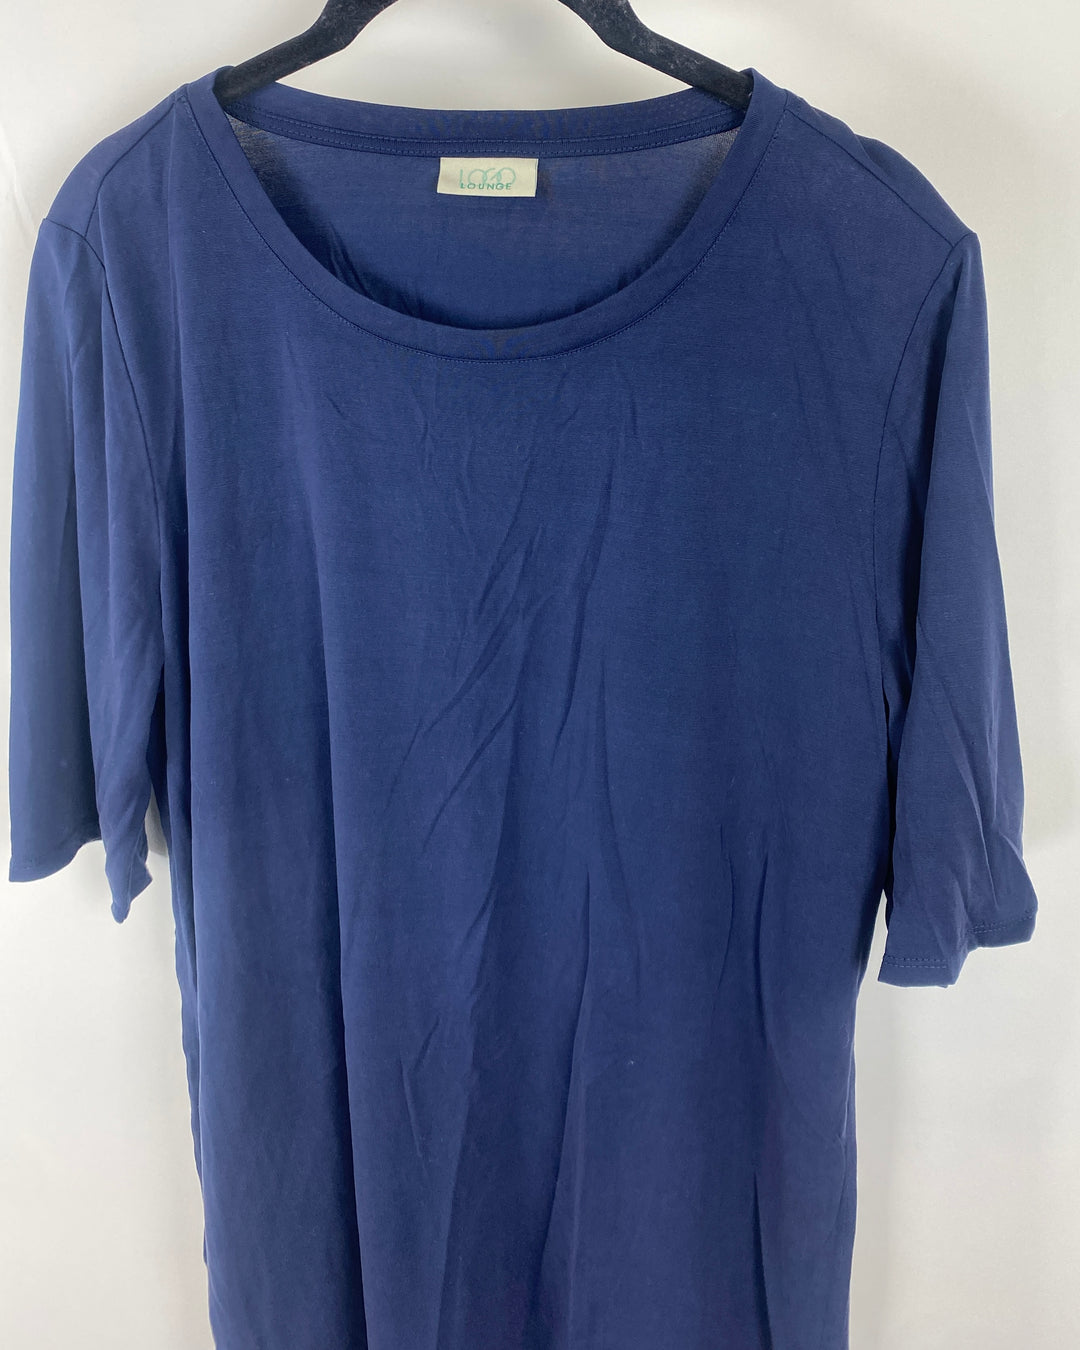 Navy Blue T-Shirt - Size 6-8